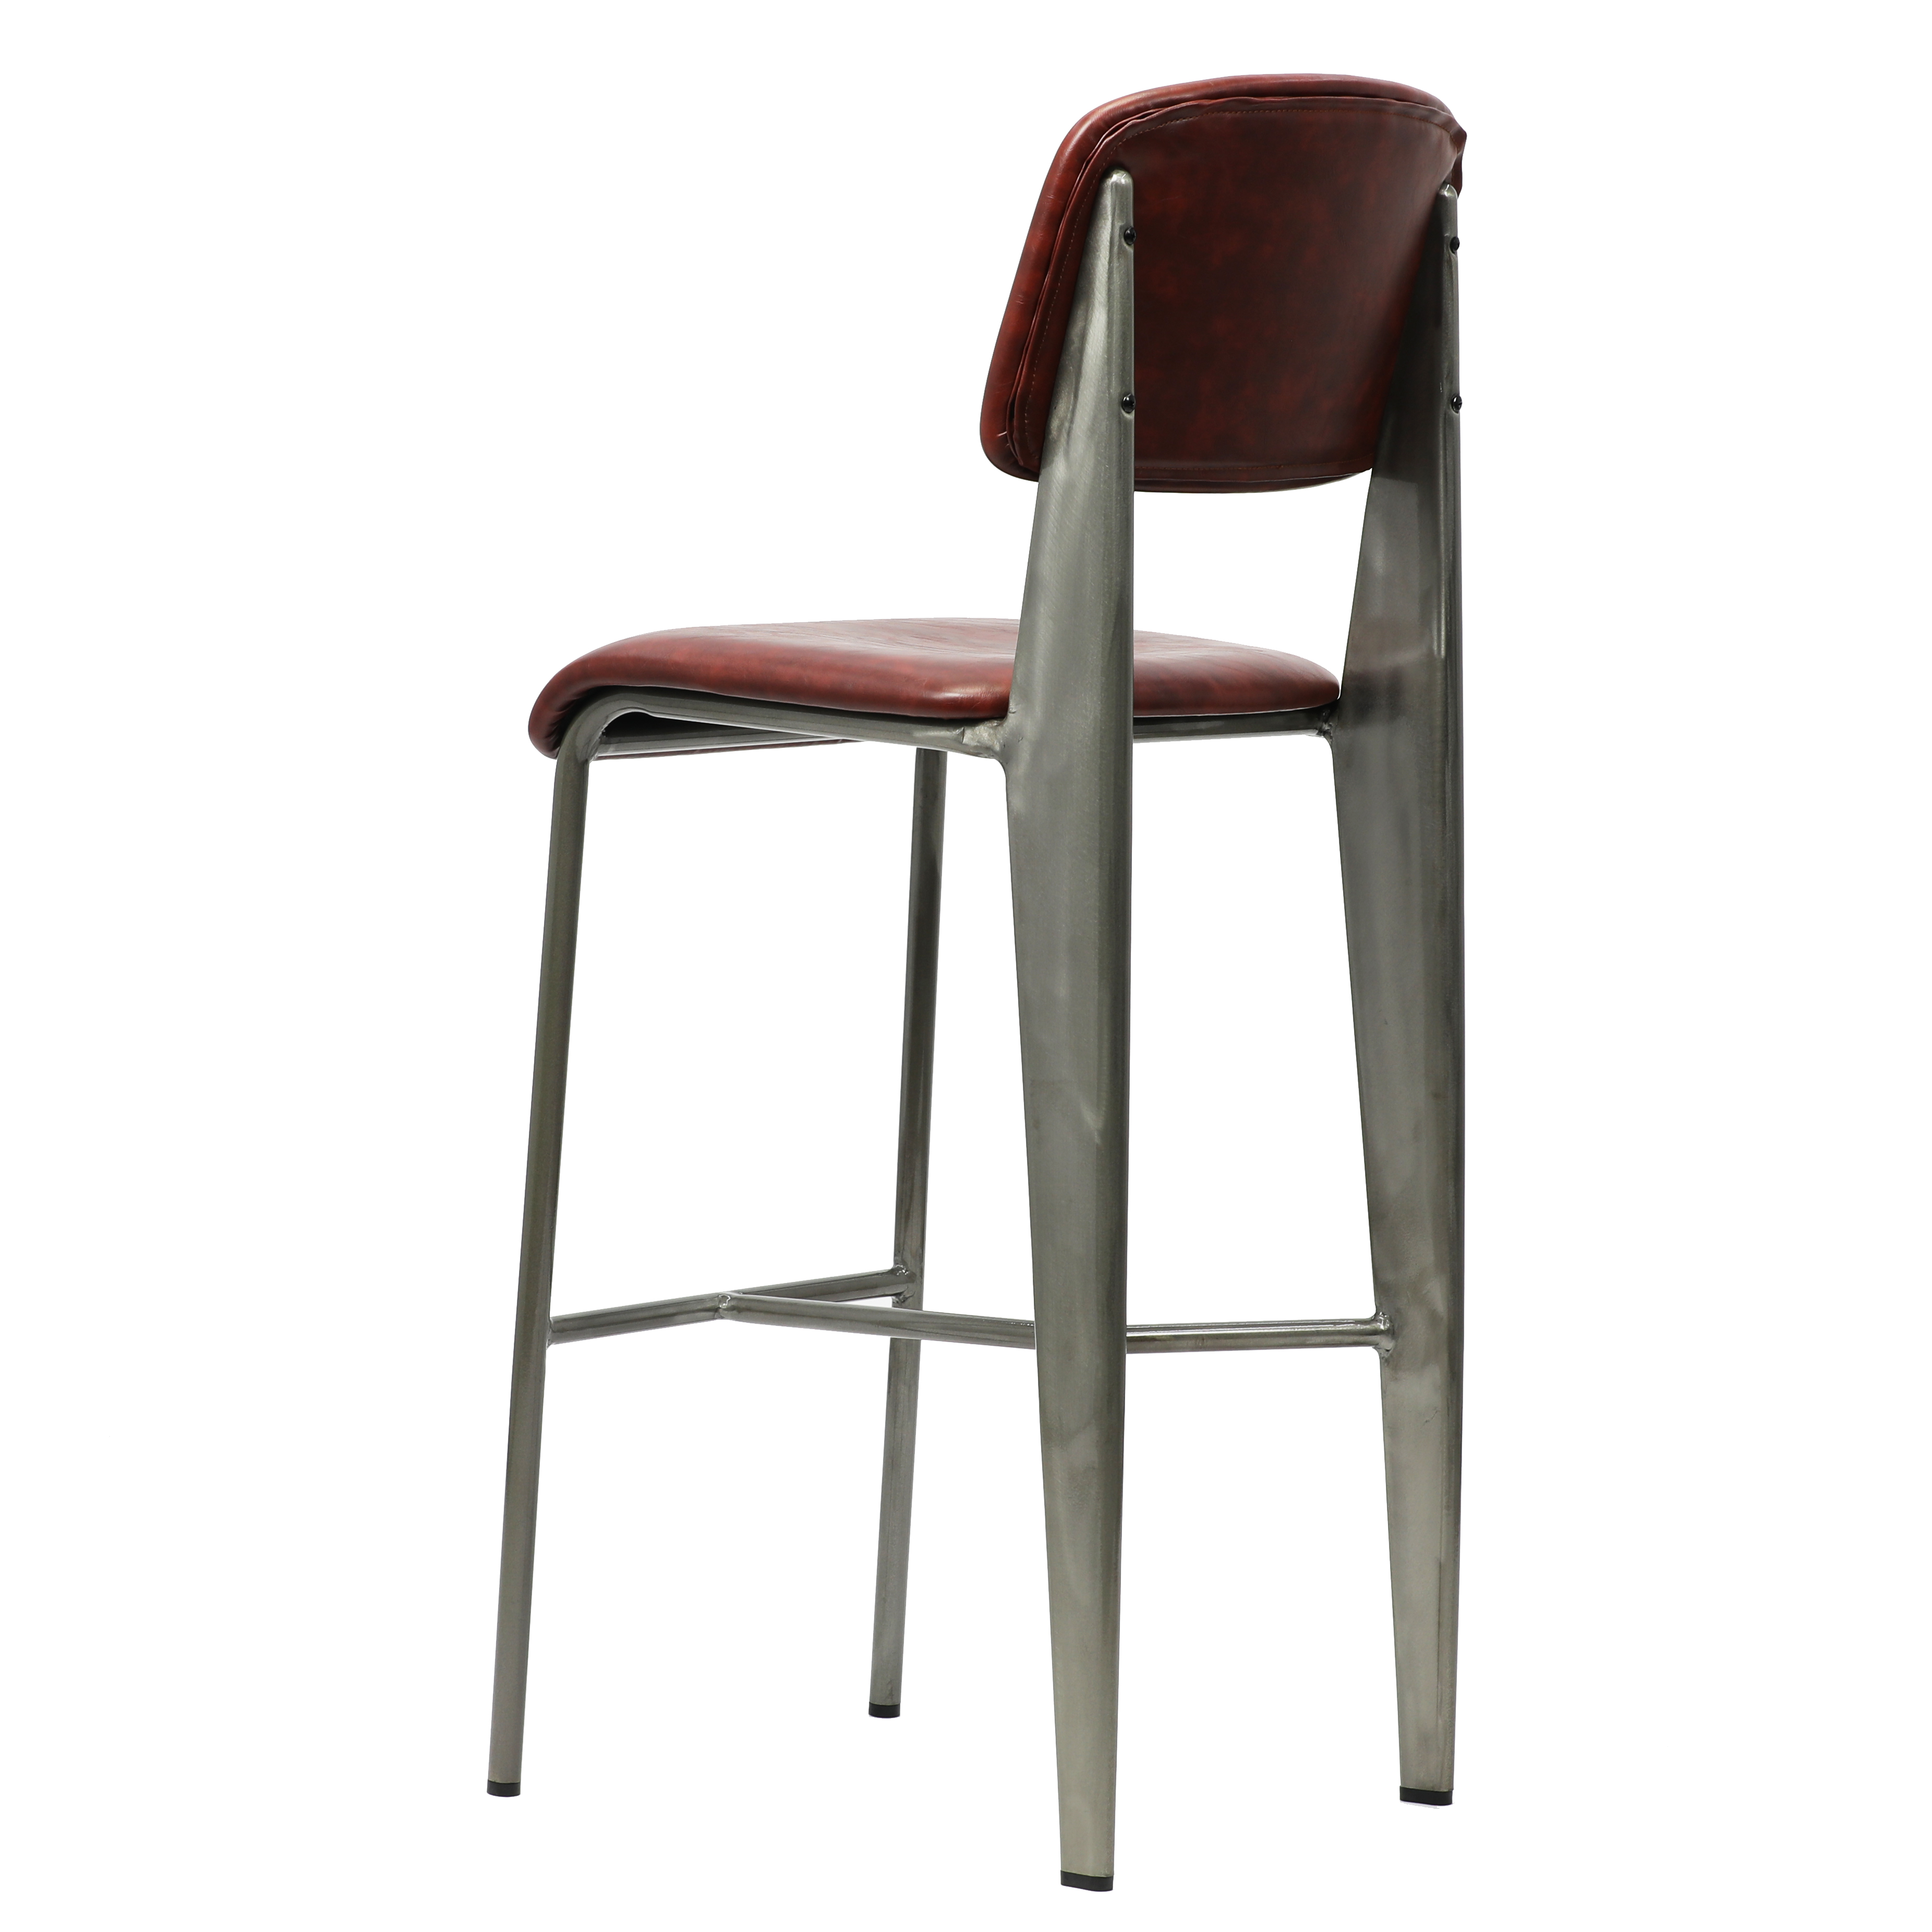 factory supplier standard bar stool chair